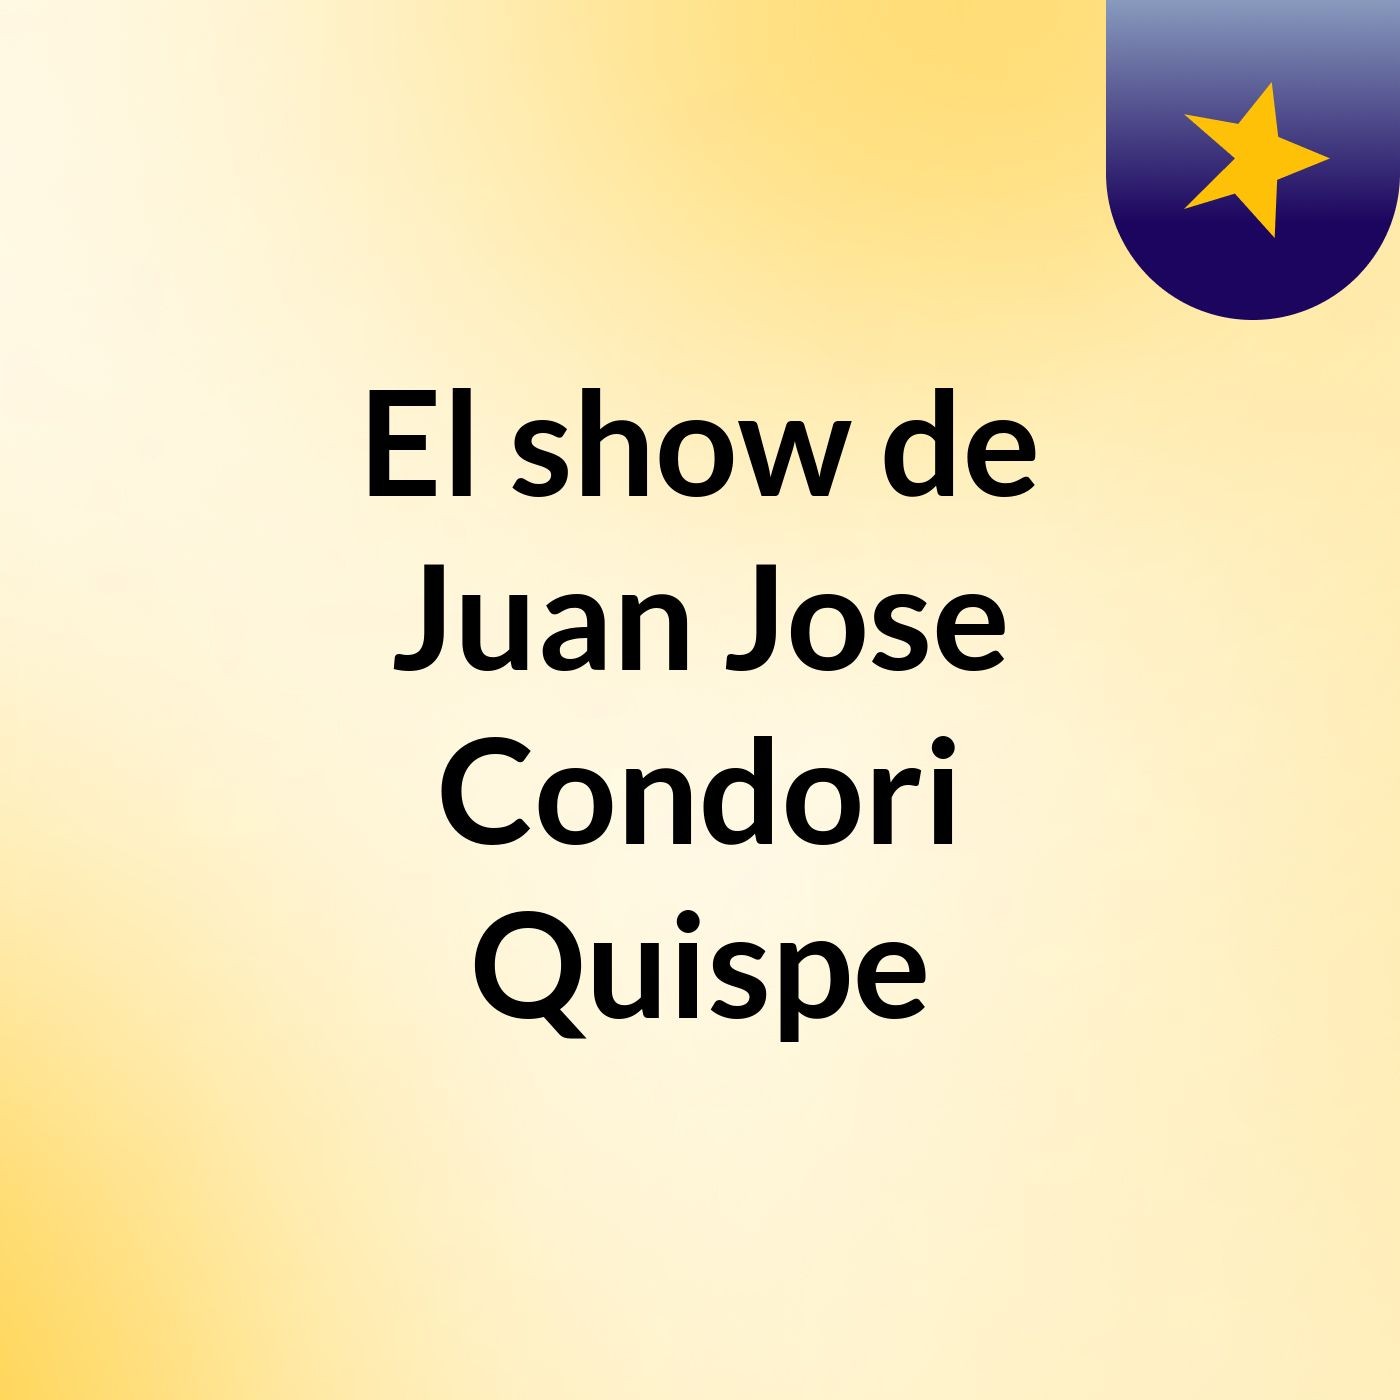 El show de Juan Jose Condori Quispe